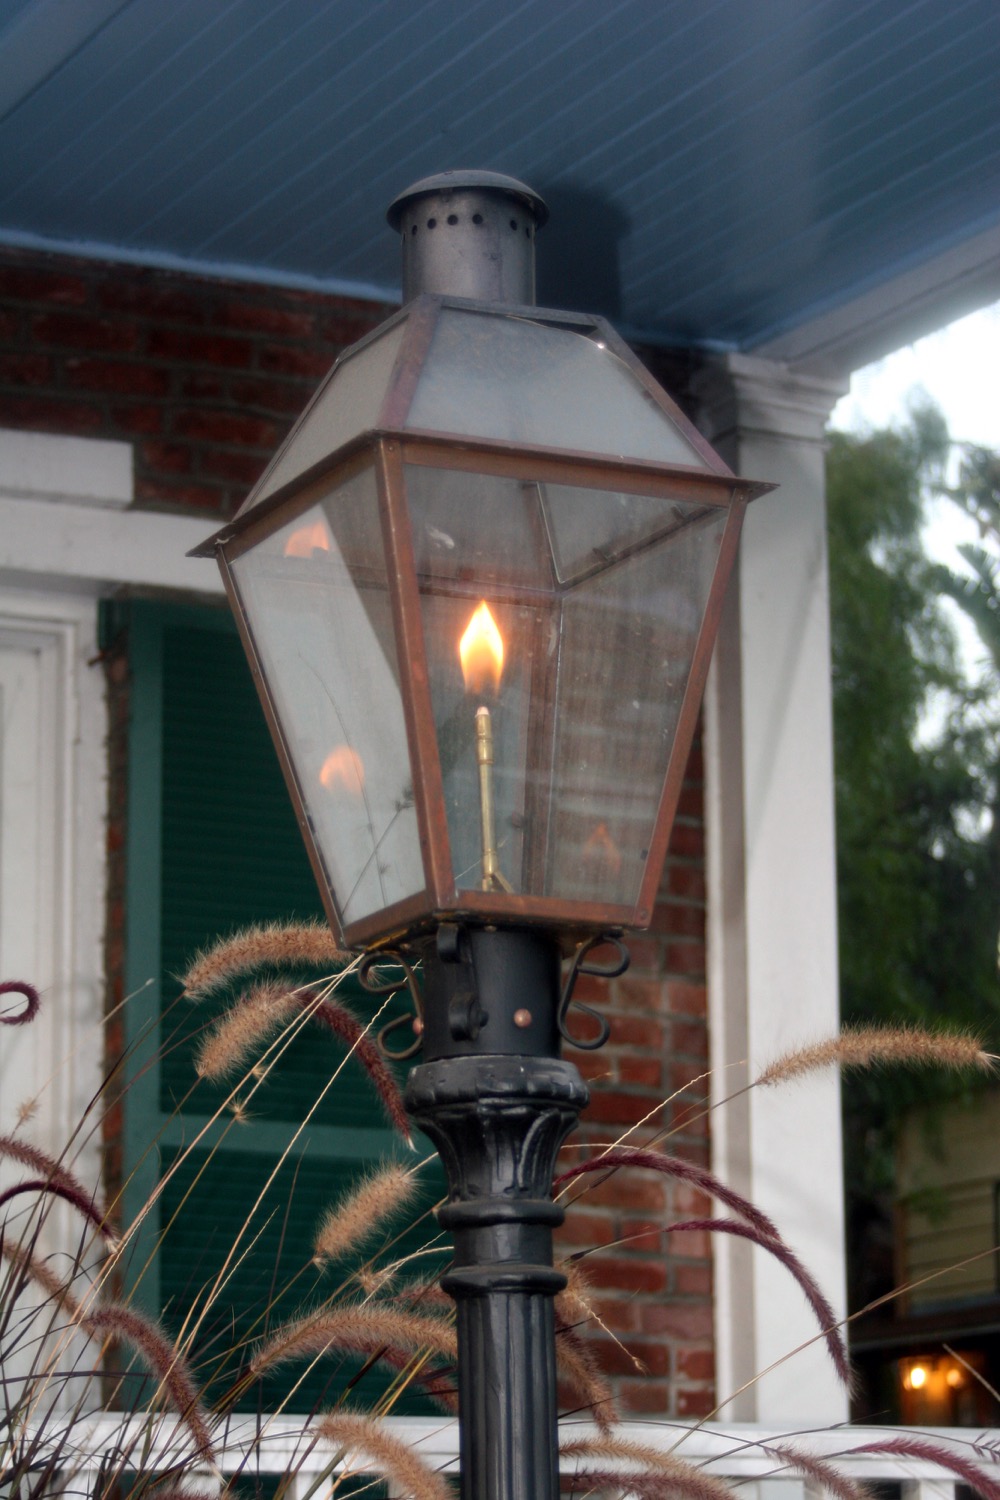 Lampe au propane devant une maison en brique